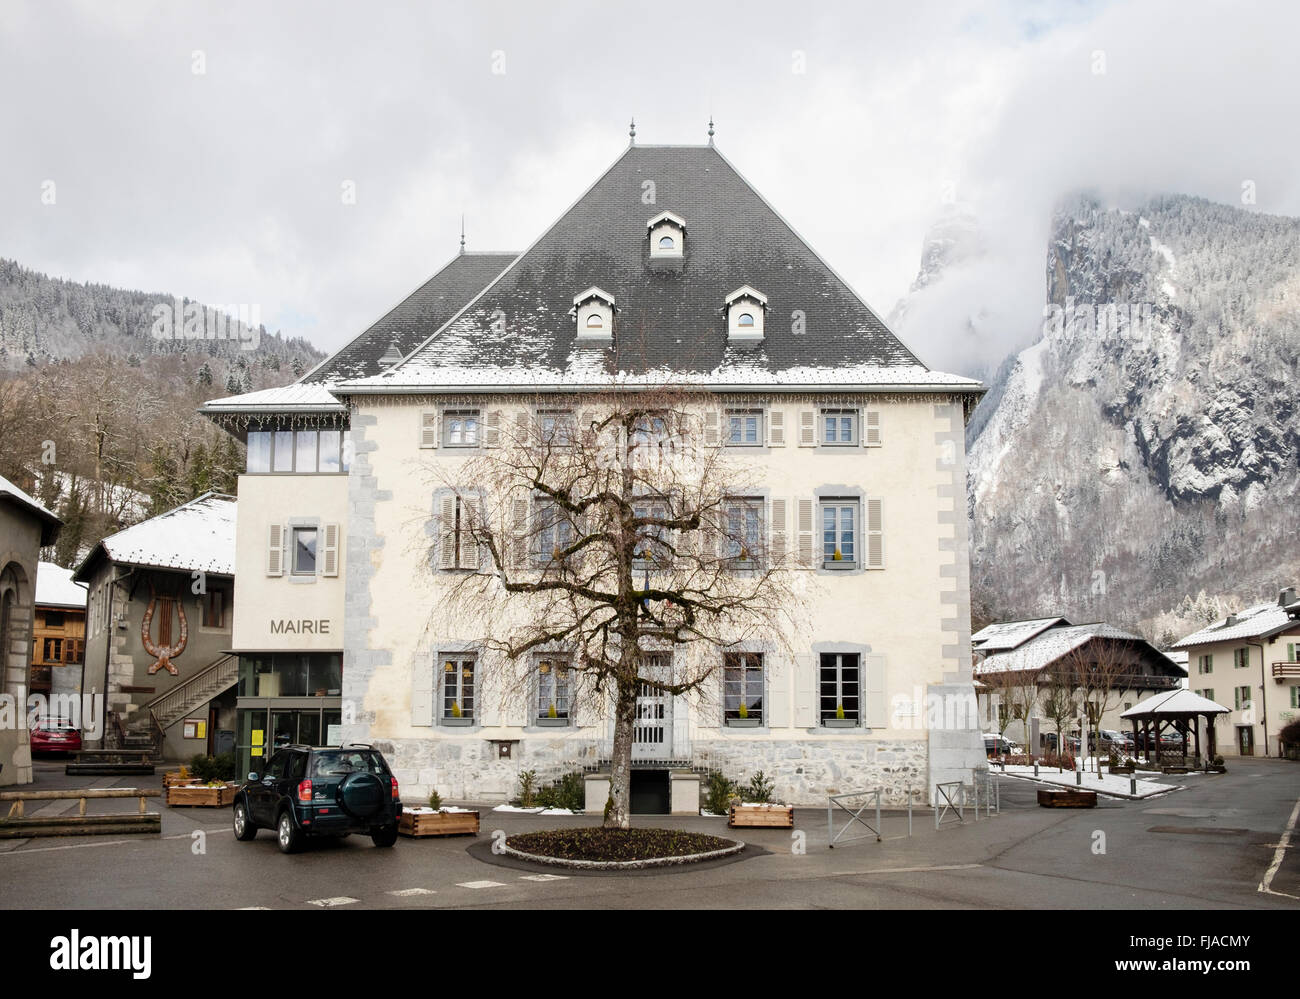 La Mairie edificio nel tradizionale villaggio alpino. Place des dents Blanches, Samoens, Vallée du Giffre, Rhone-Alpes, Francia Foto Stock